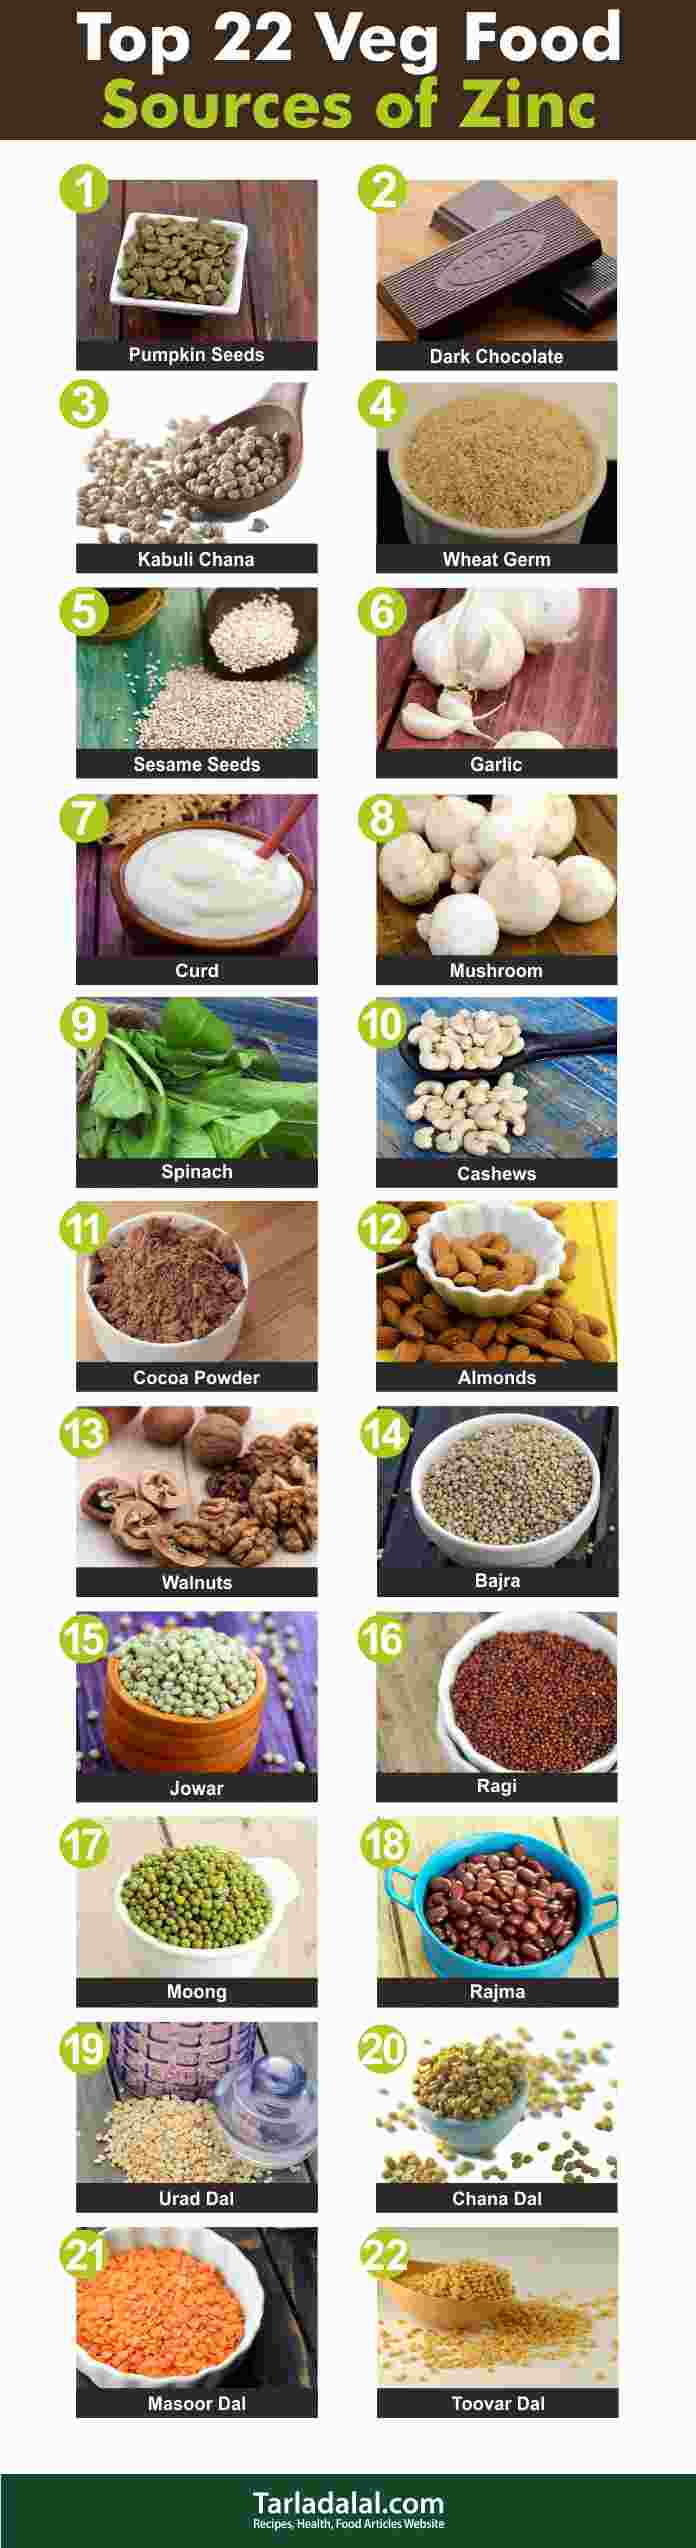 Top 22 Indian Veg Food Sources Of Zinc Tarladalal Com